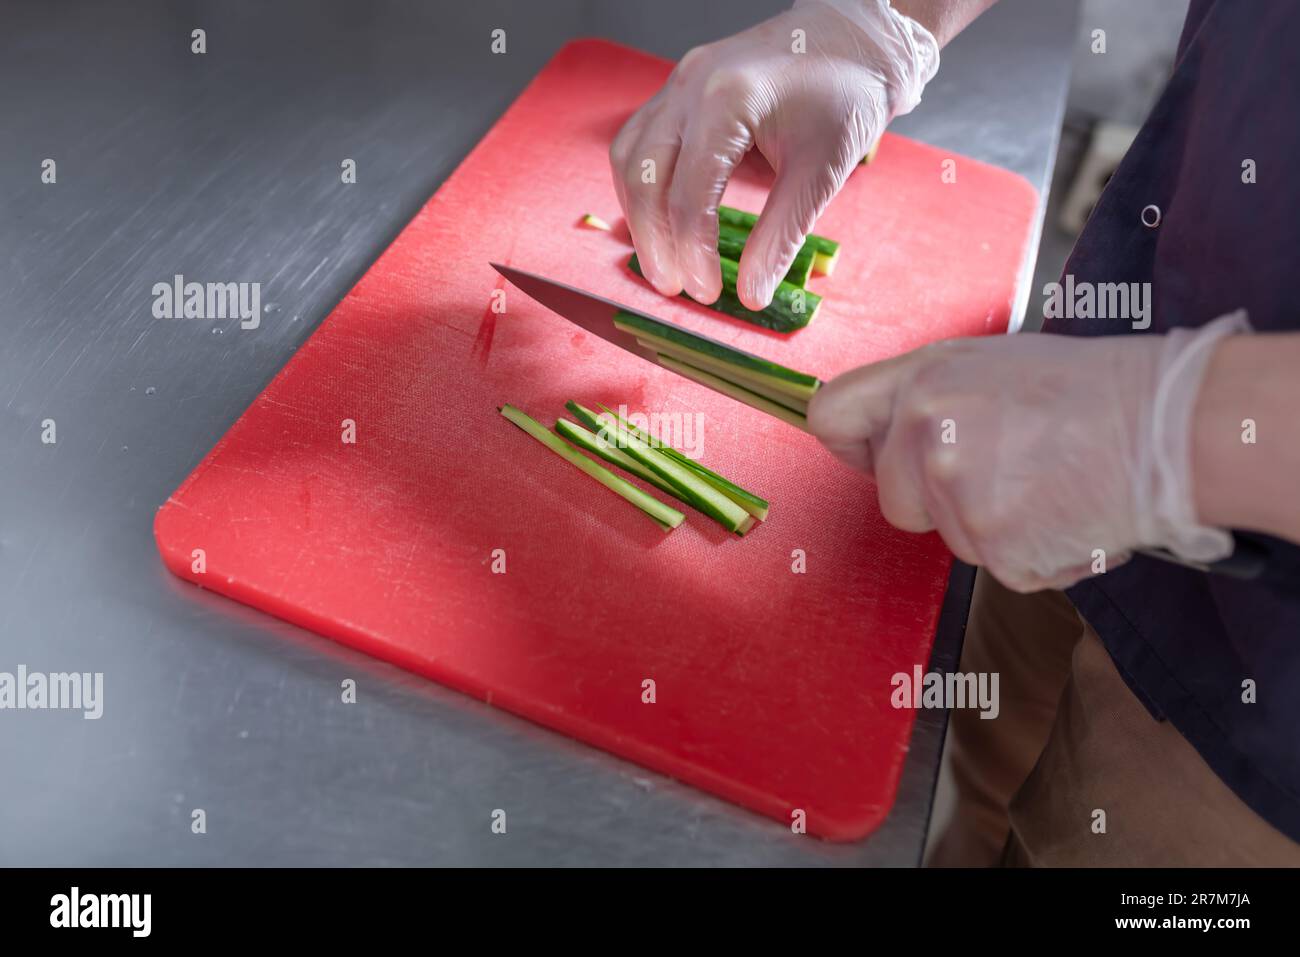 Le cuisinier coupe le concombre pour les petits pains à sushis sur un tableau rouge. Photo de haute qualité Banque D'Images